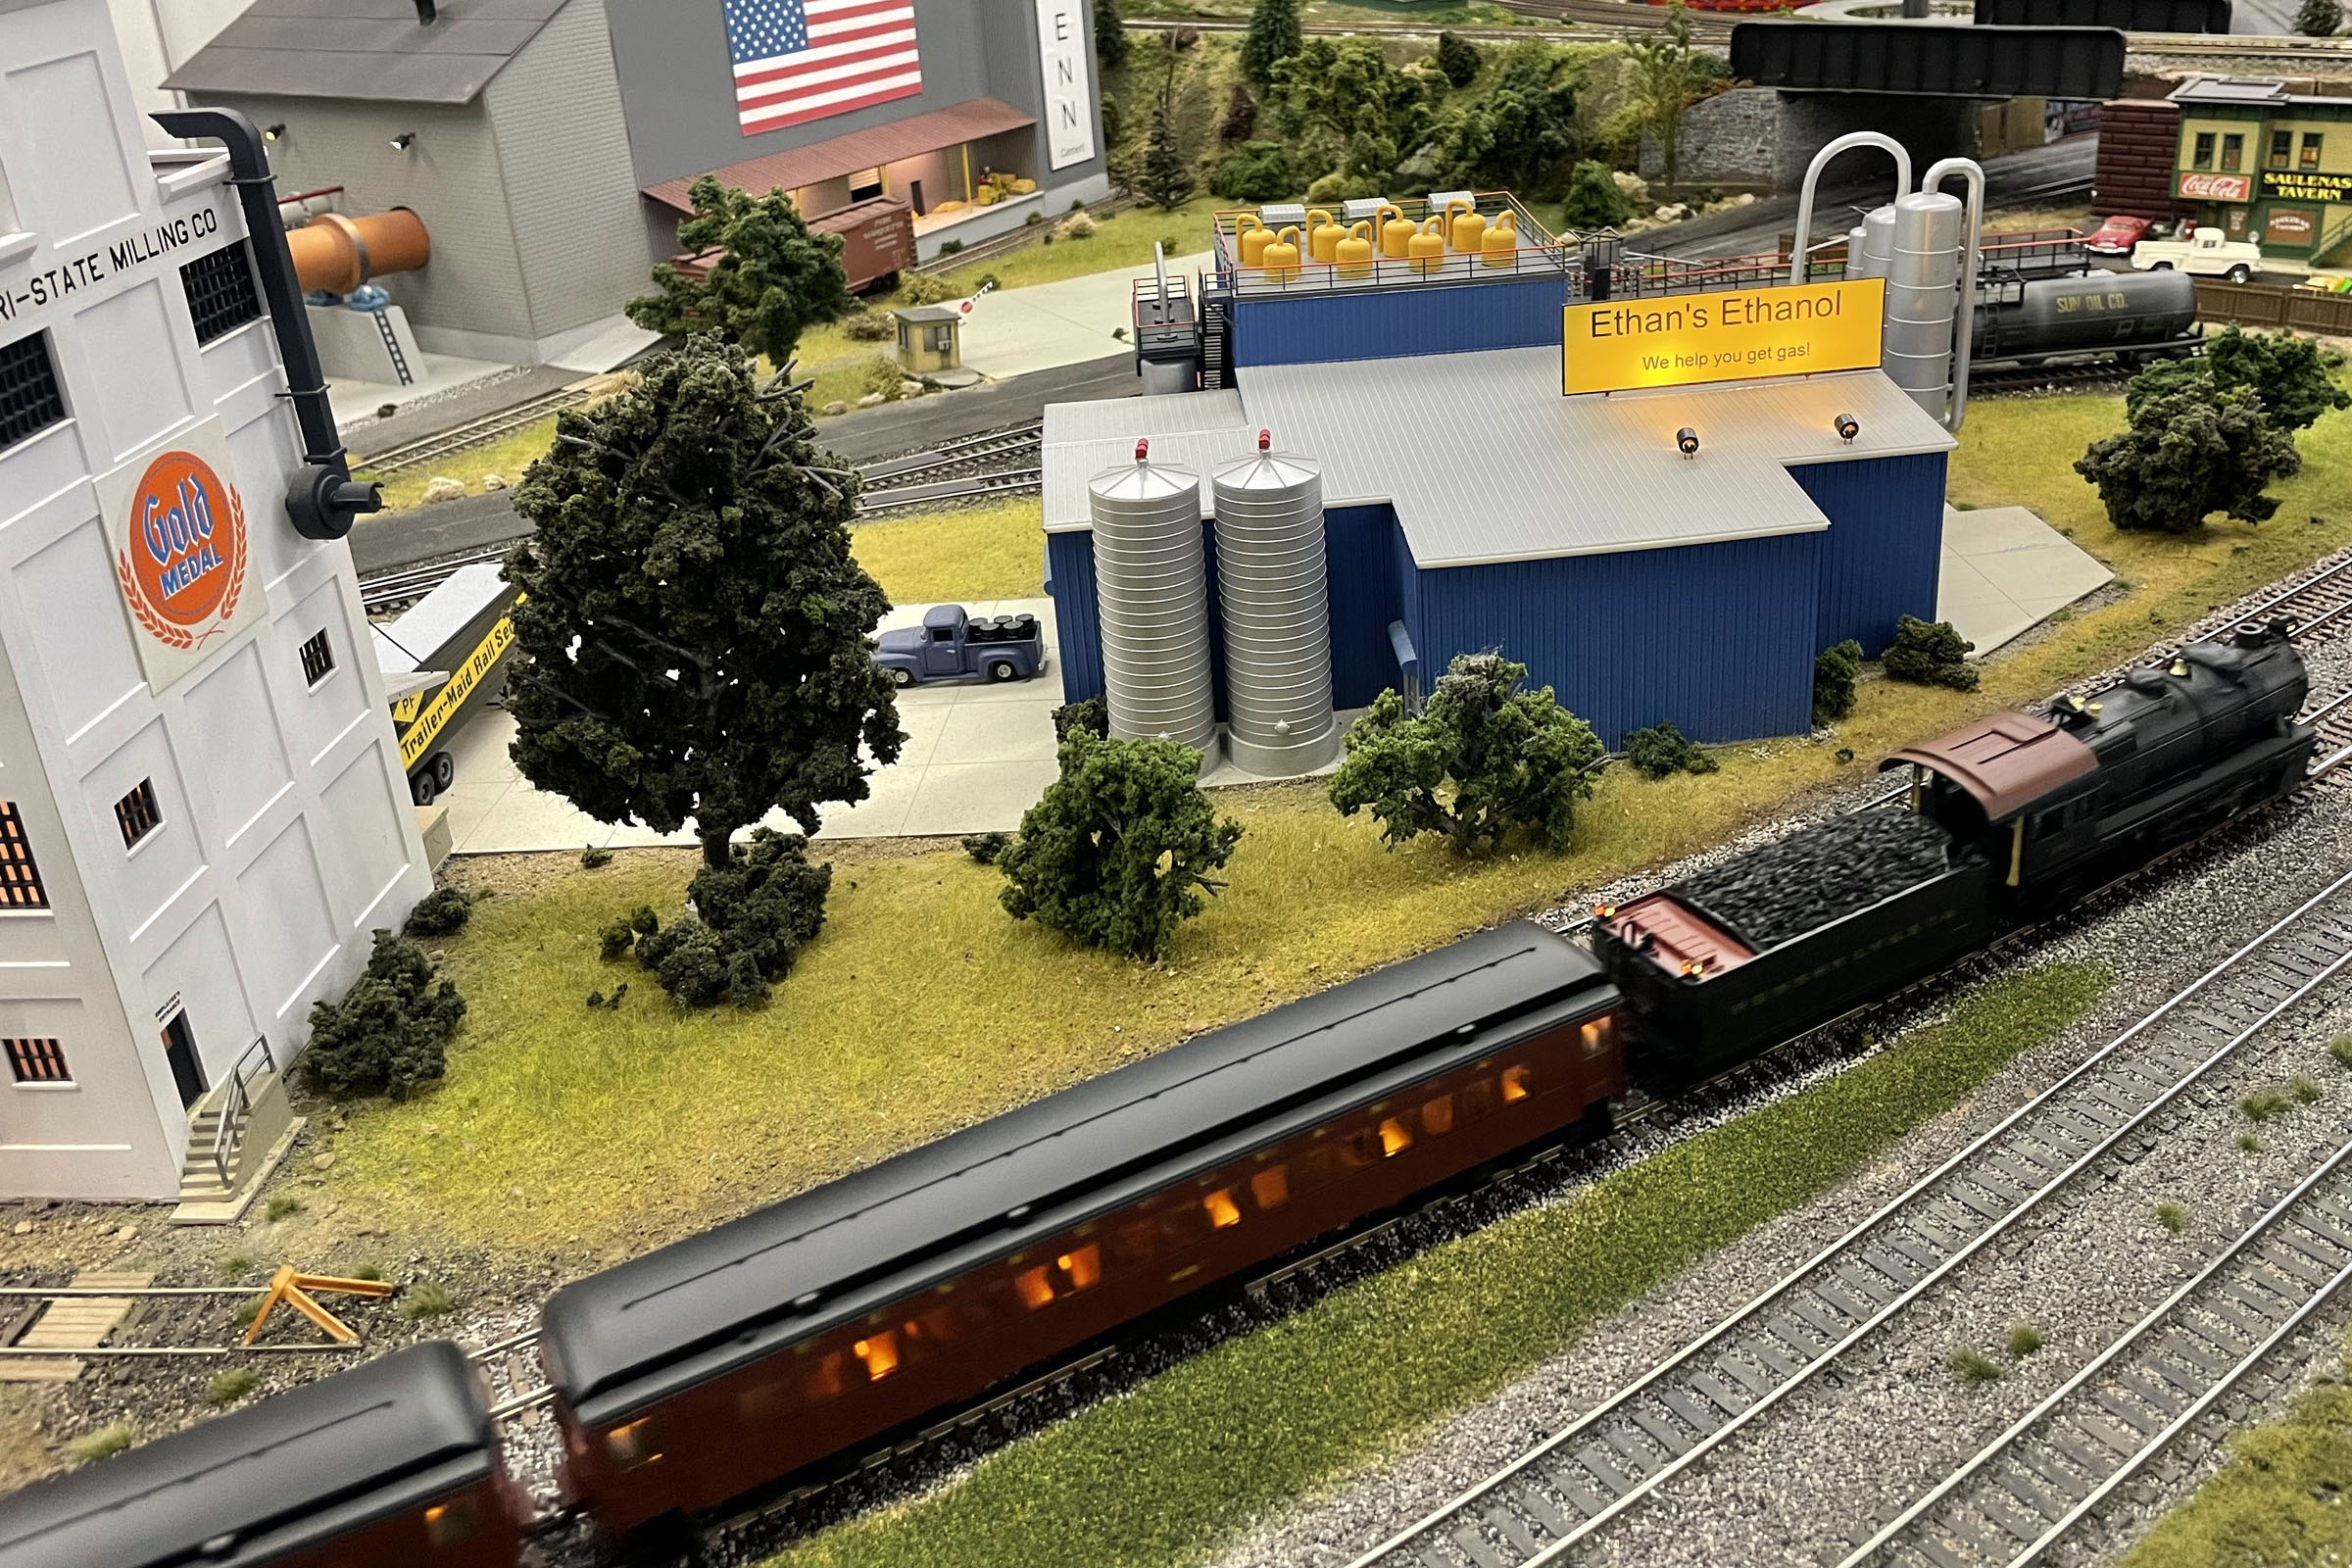 L’un des plus grands réseaux ferroviaires à l’échelle HO d’Amérique - Chelten Hills Model Railroad Club